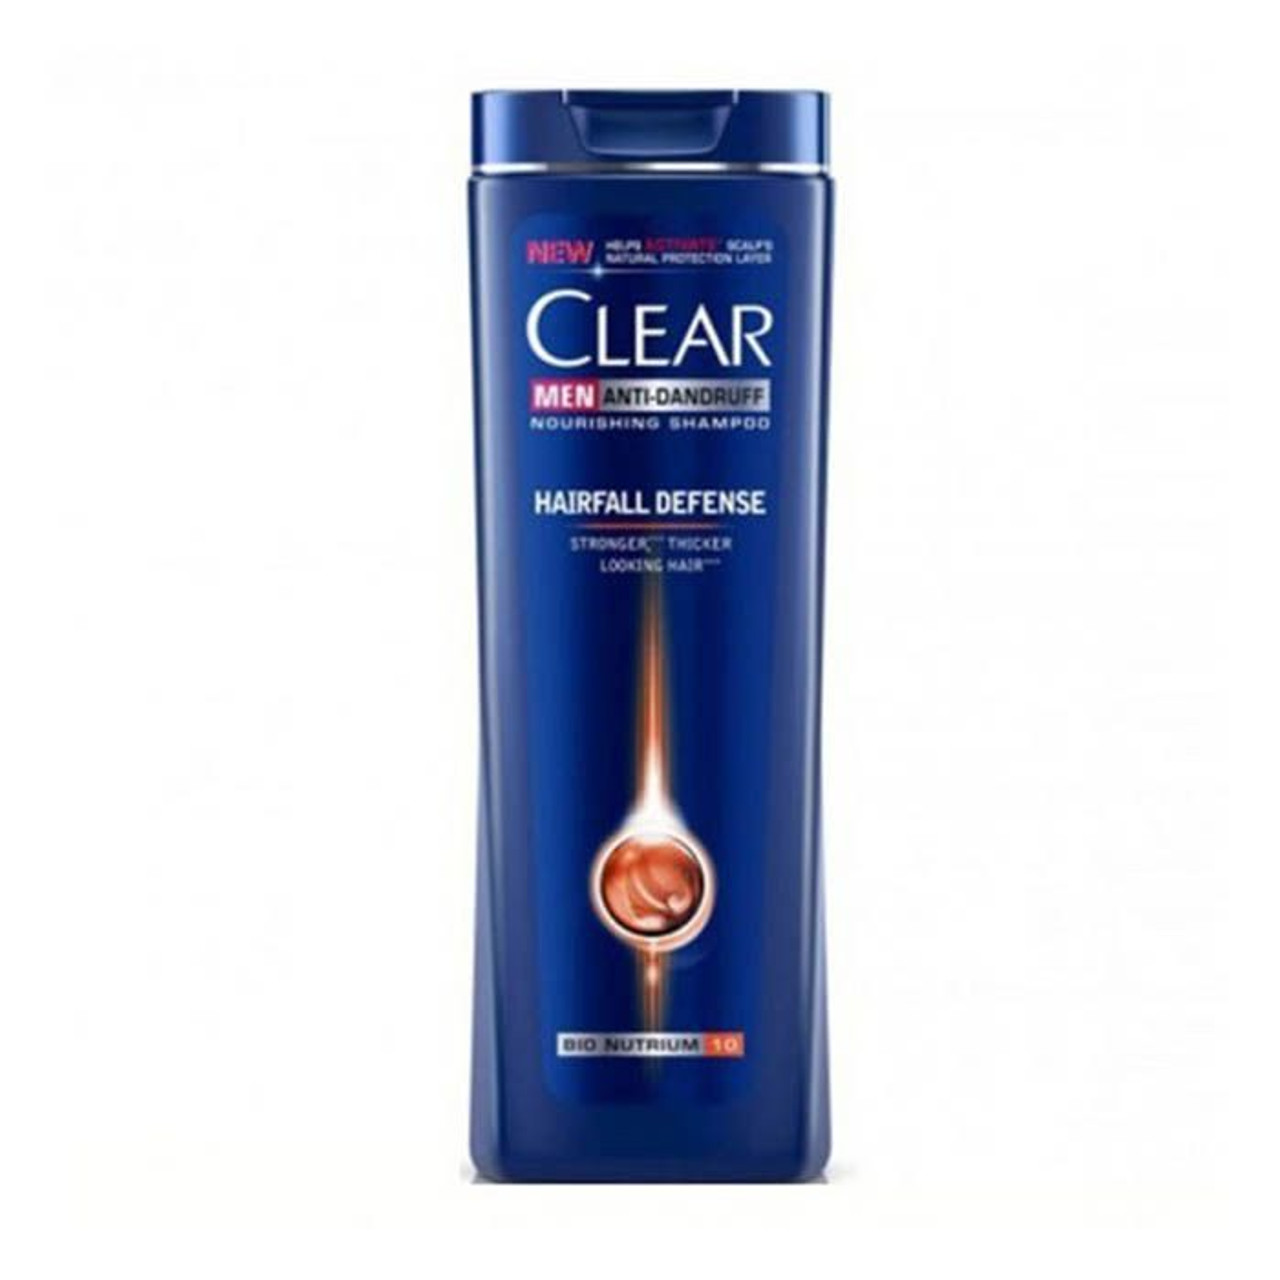 Clear Hair Fall Defense Shampoo 200ML